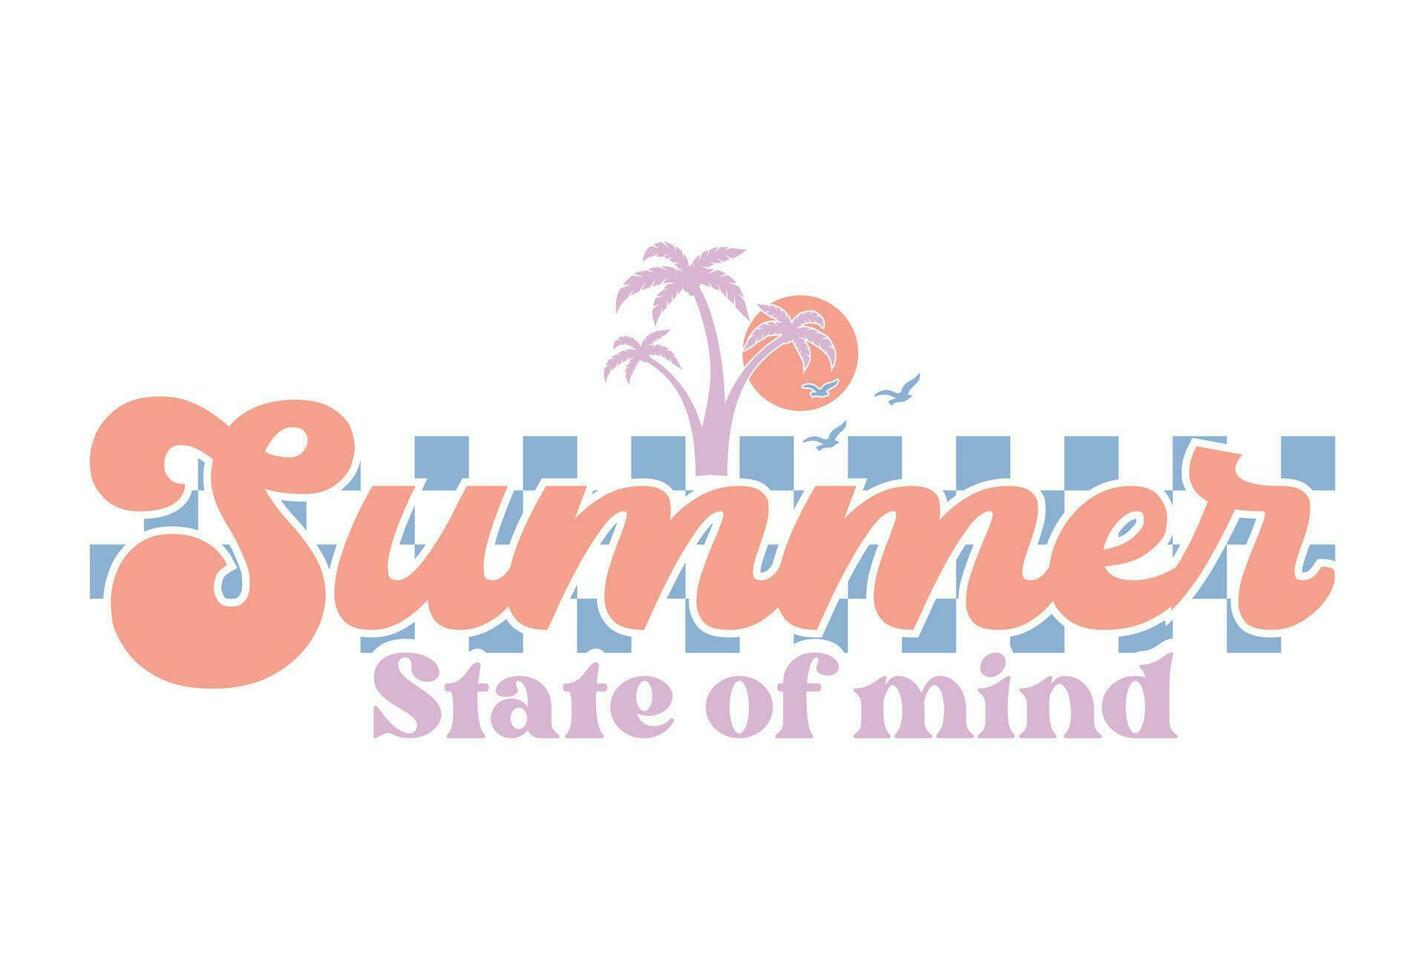 Sommer- zitieren, retro Sommer- zitieren, Sommer- Schwingungen, Sommer- Strand, Ozean, Meer vektor